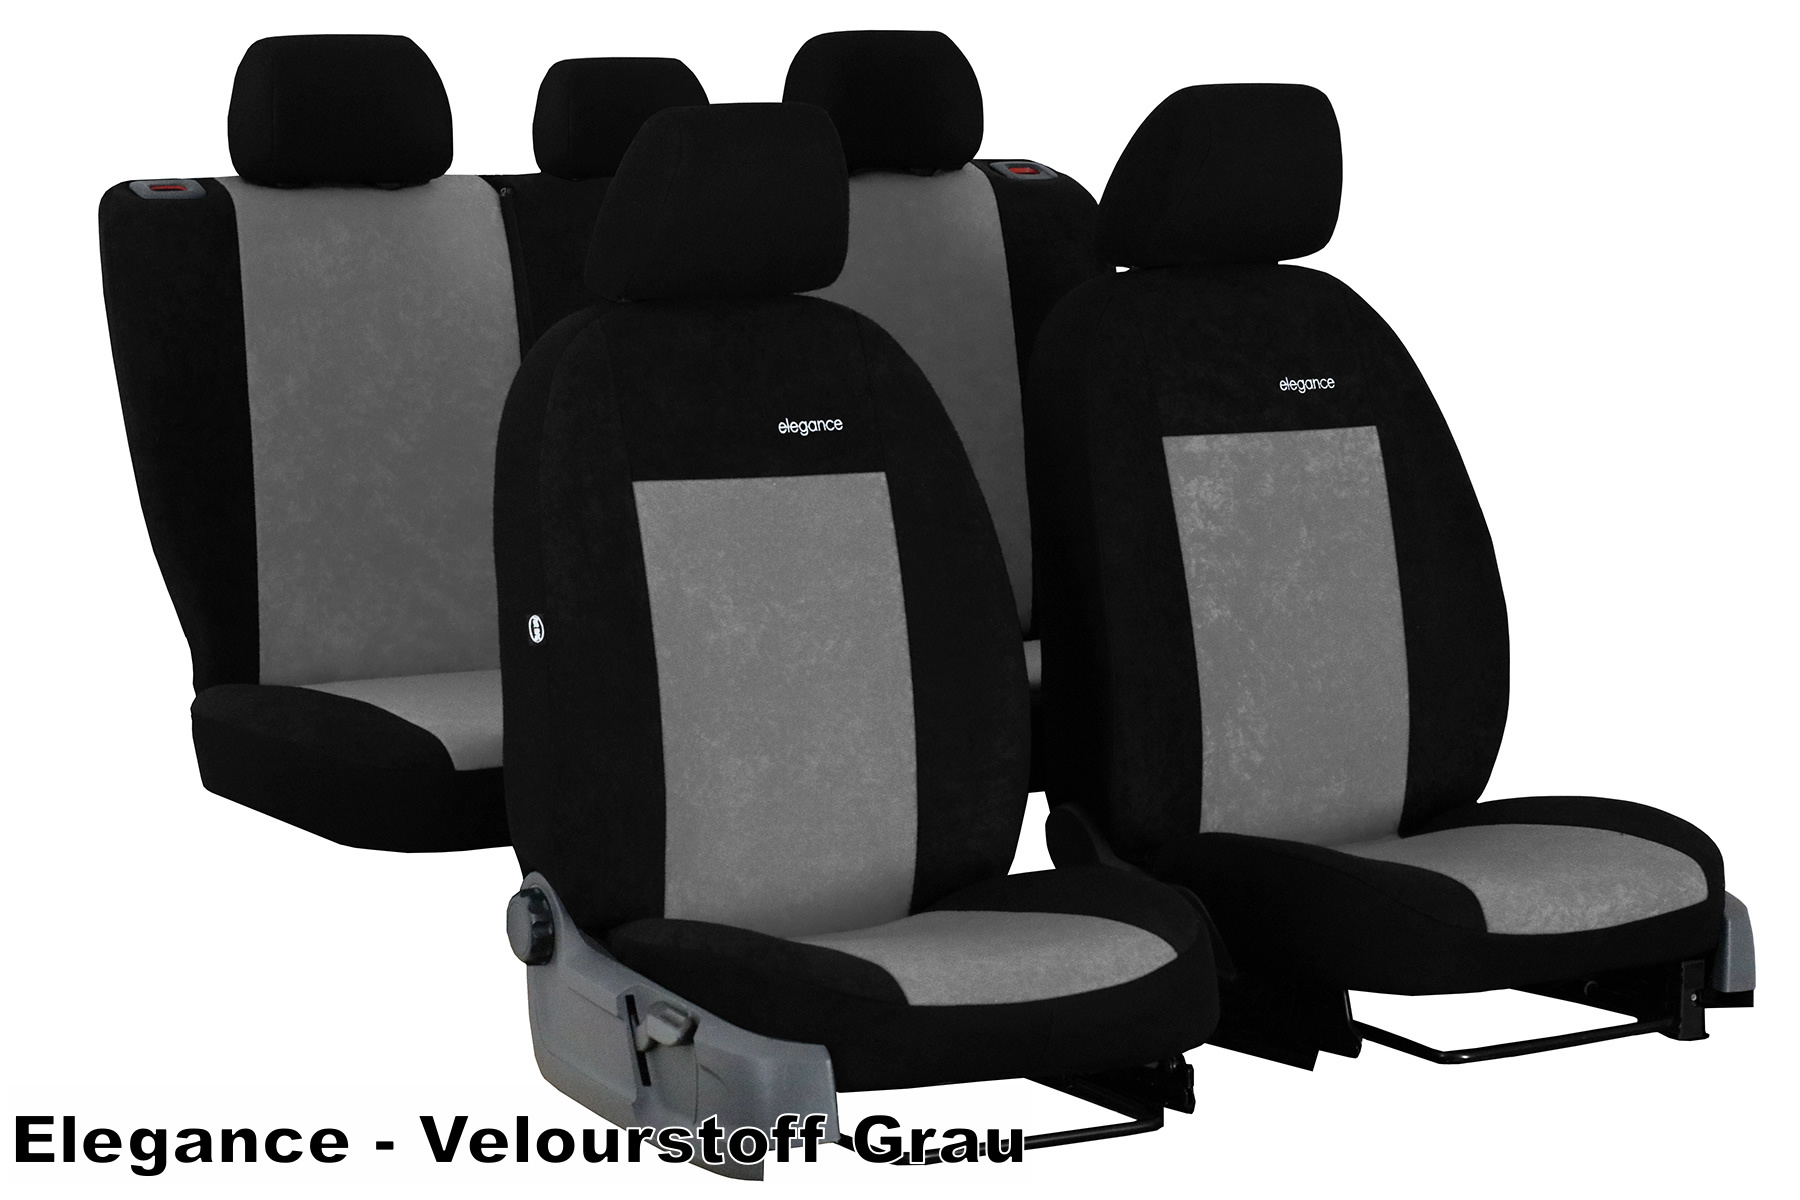 Maipula Autositzbezüge Für VW Für Volkswagen Tiguan Luxus 5 Sitze